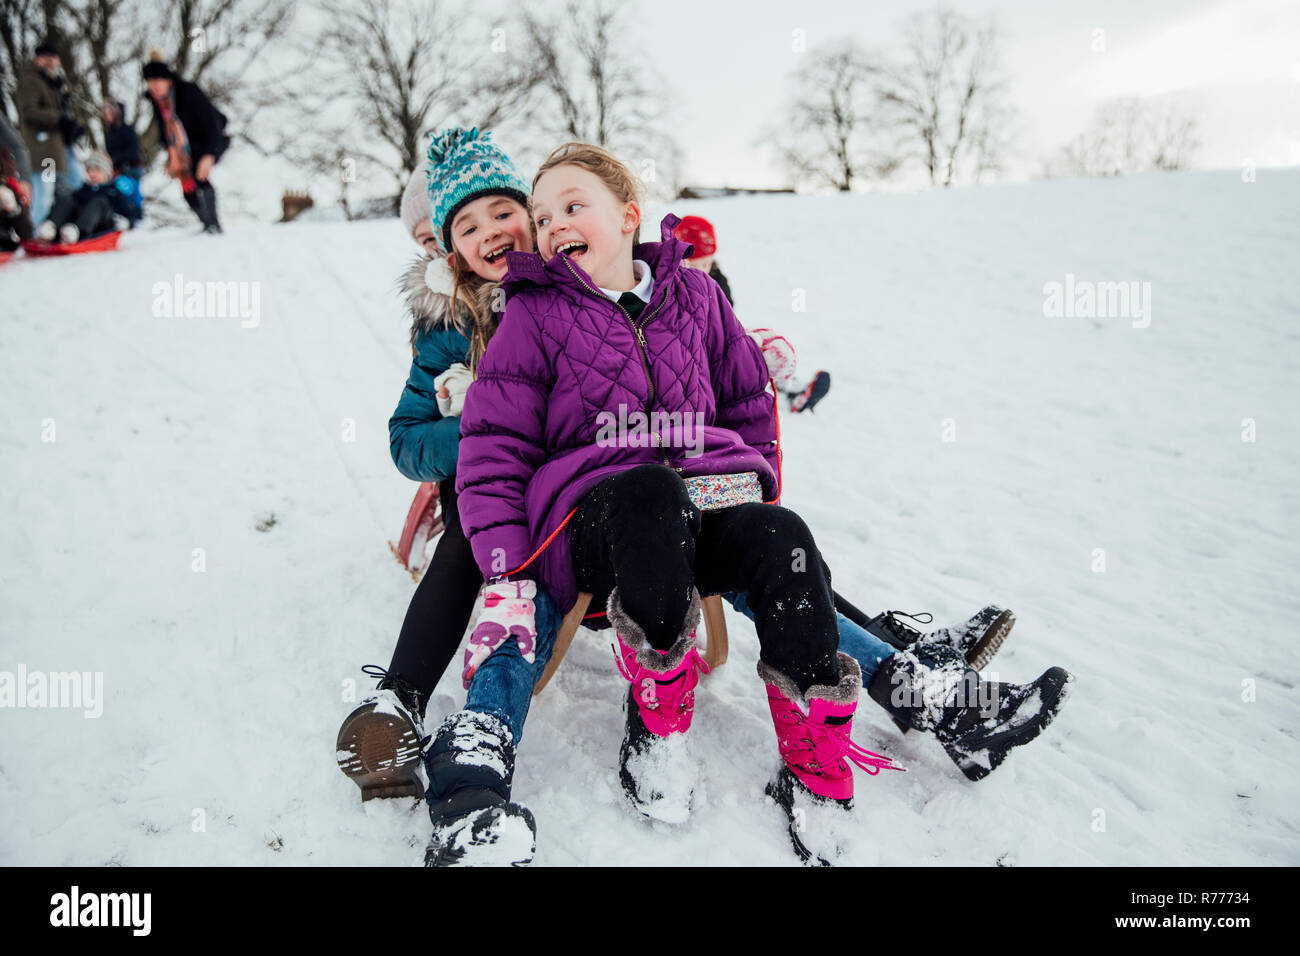 Mädchen Racing auf Schlitten im Schnee Stockfoto